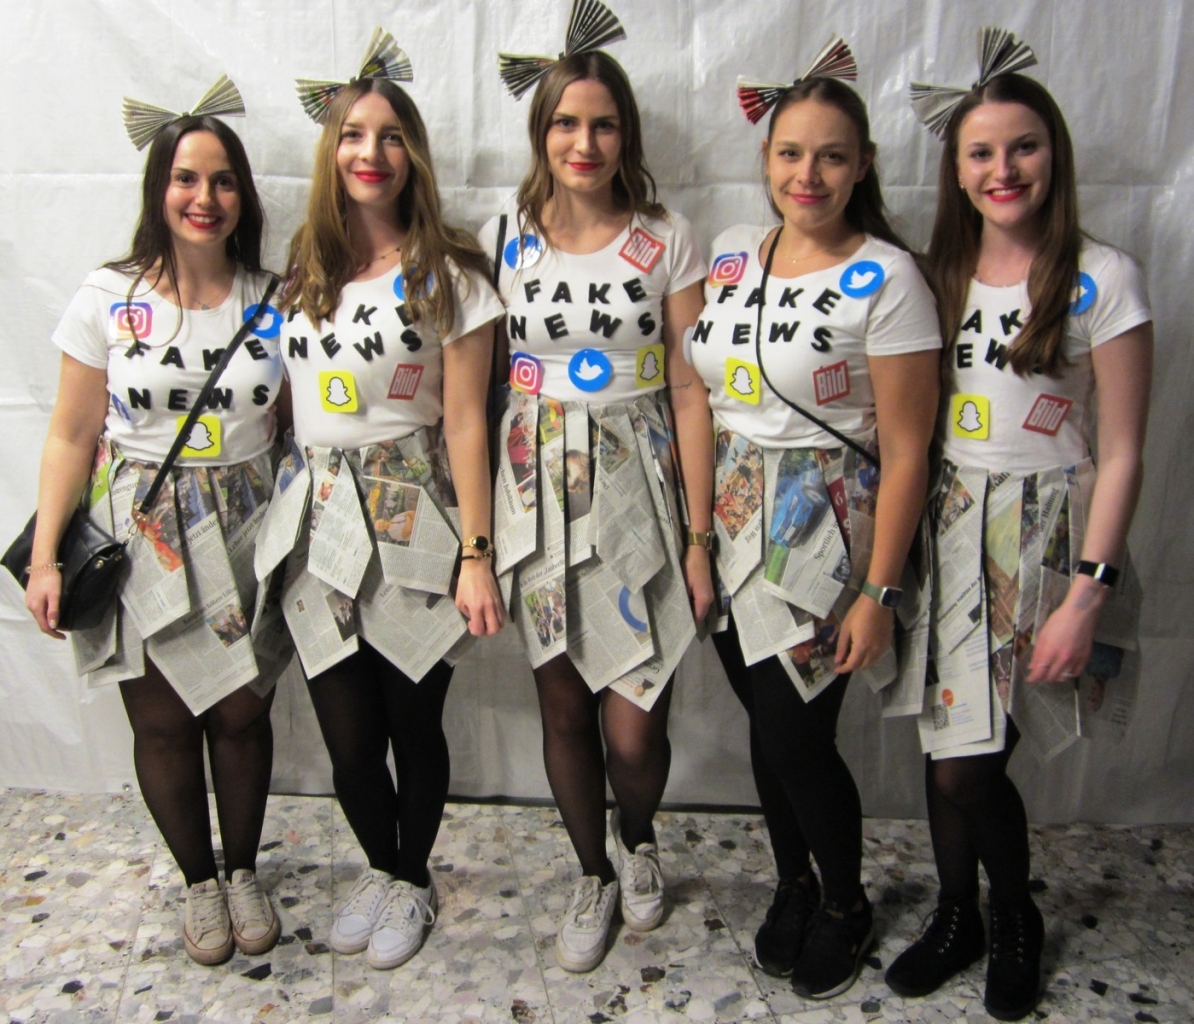 Die Kostüme waren wieder großartig. Hier fünf Frauen als Fake News verkleidet.